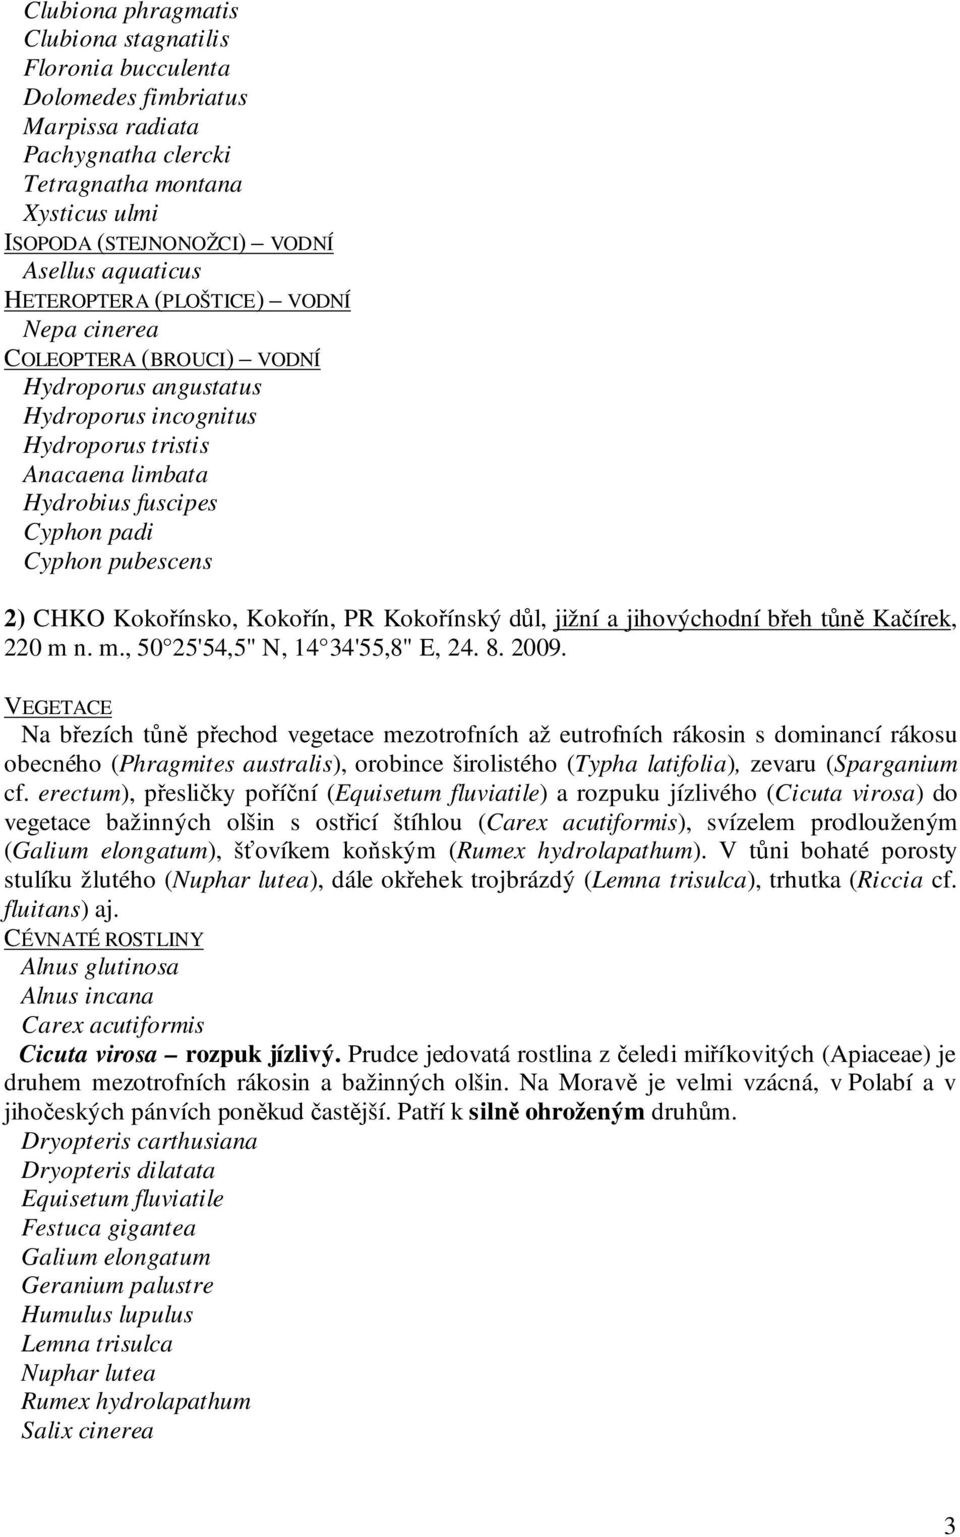 CHKO Kokořínsko, Kokořín, PR Kokořínský důl, jižní a jihovýchodní břeh tůně Kačírek, 220 m n. m., 50 25'54,5" N, 14 34'55,8" E, 24. 8. 2009.